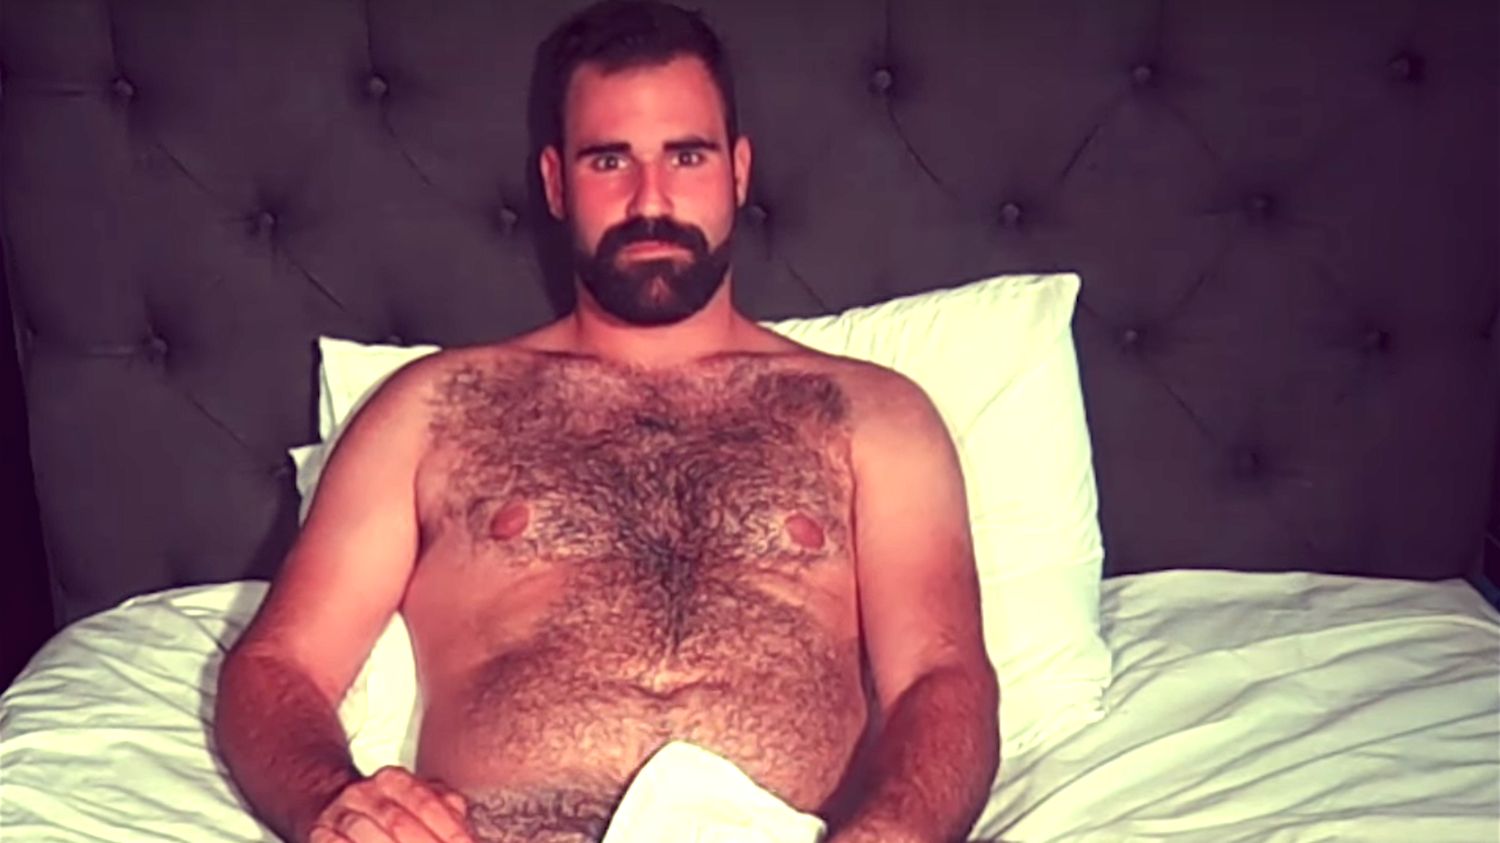 Normal Gay Men Porn - Queer Clicks: December 19 | â€œOrdinaryâ€ Gay Men Get Naked For 2018 Calendar  That Illustrates The Many Shapes Of Sexy, Matt Lambert's Short Film,  Flower, Finds Intimacy InSex & Friendship, & Other News - QueerClick